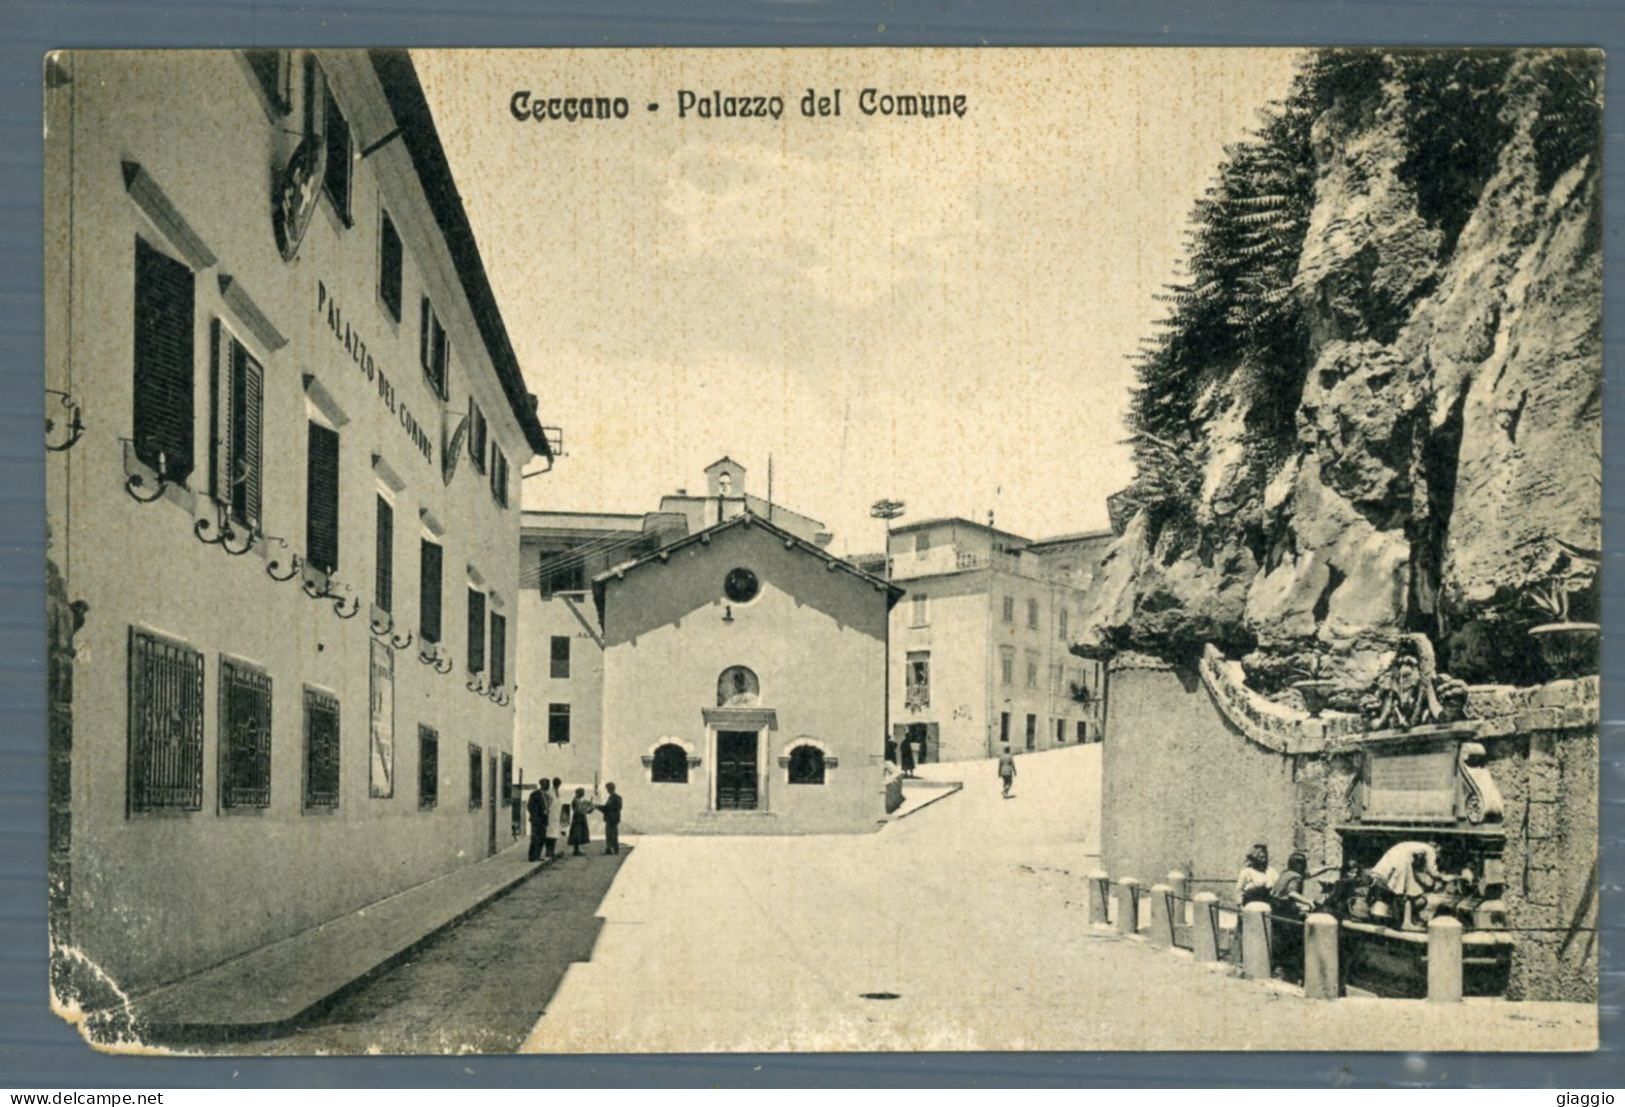 °°° Cartolina - Ceccano Palazzo Del Comune - Formato Piccolo - Nuova °°° - Frosinone